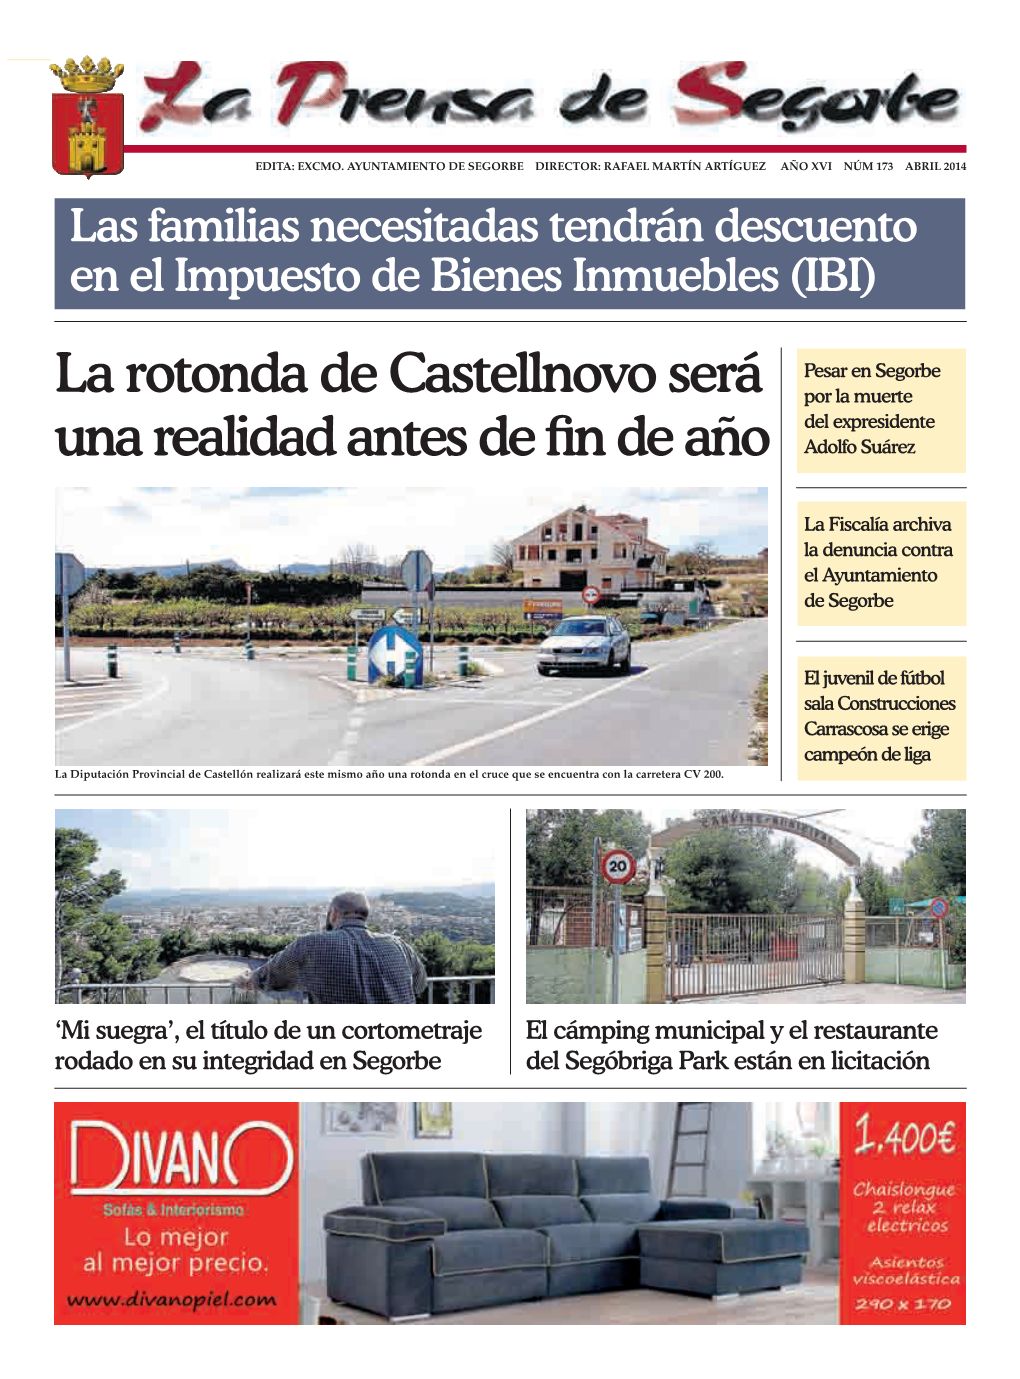 La Rotonda De Castellnovo Será Una Realidad Antes De Fin De